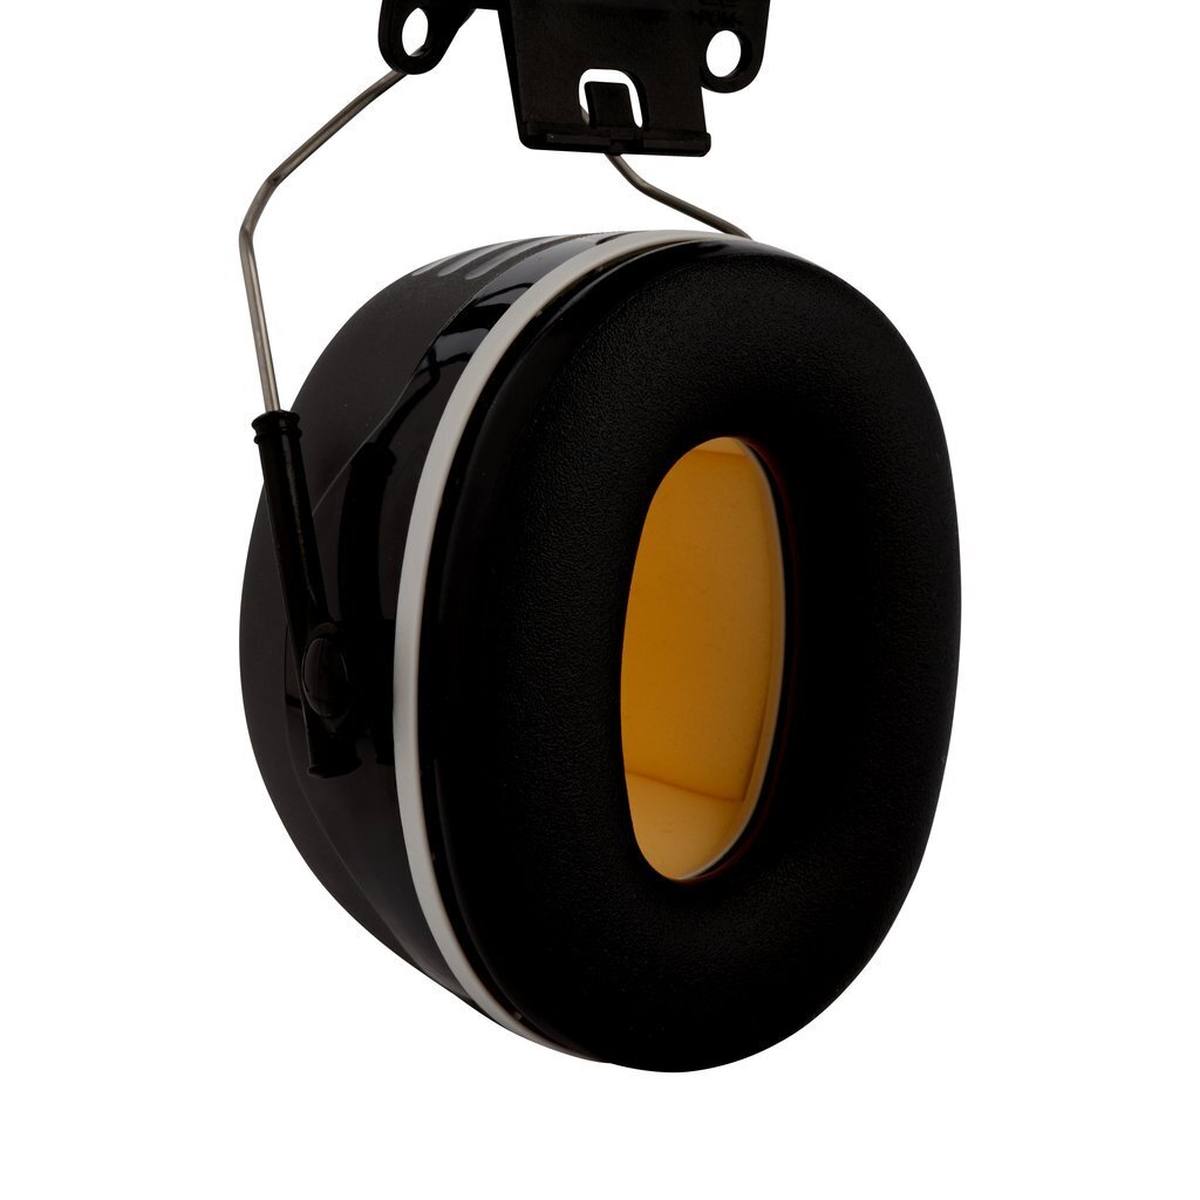 3M PELTOR Casque antibruit, X5P3E fixation au casque, noir, SNR=36 dB avec adaptateur pour casque P3E (pour tous les casques 3M, sauf G2000)